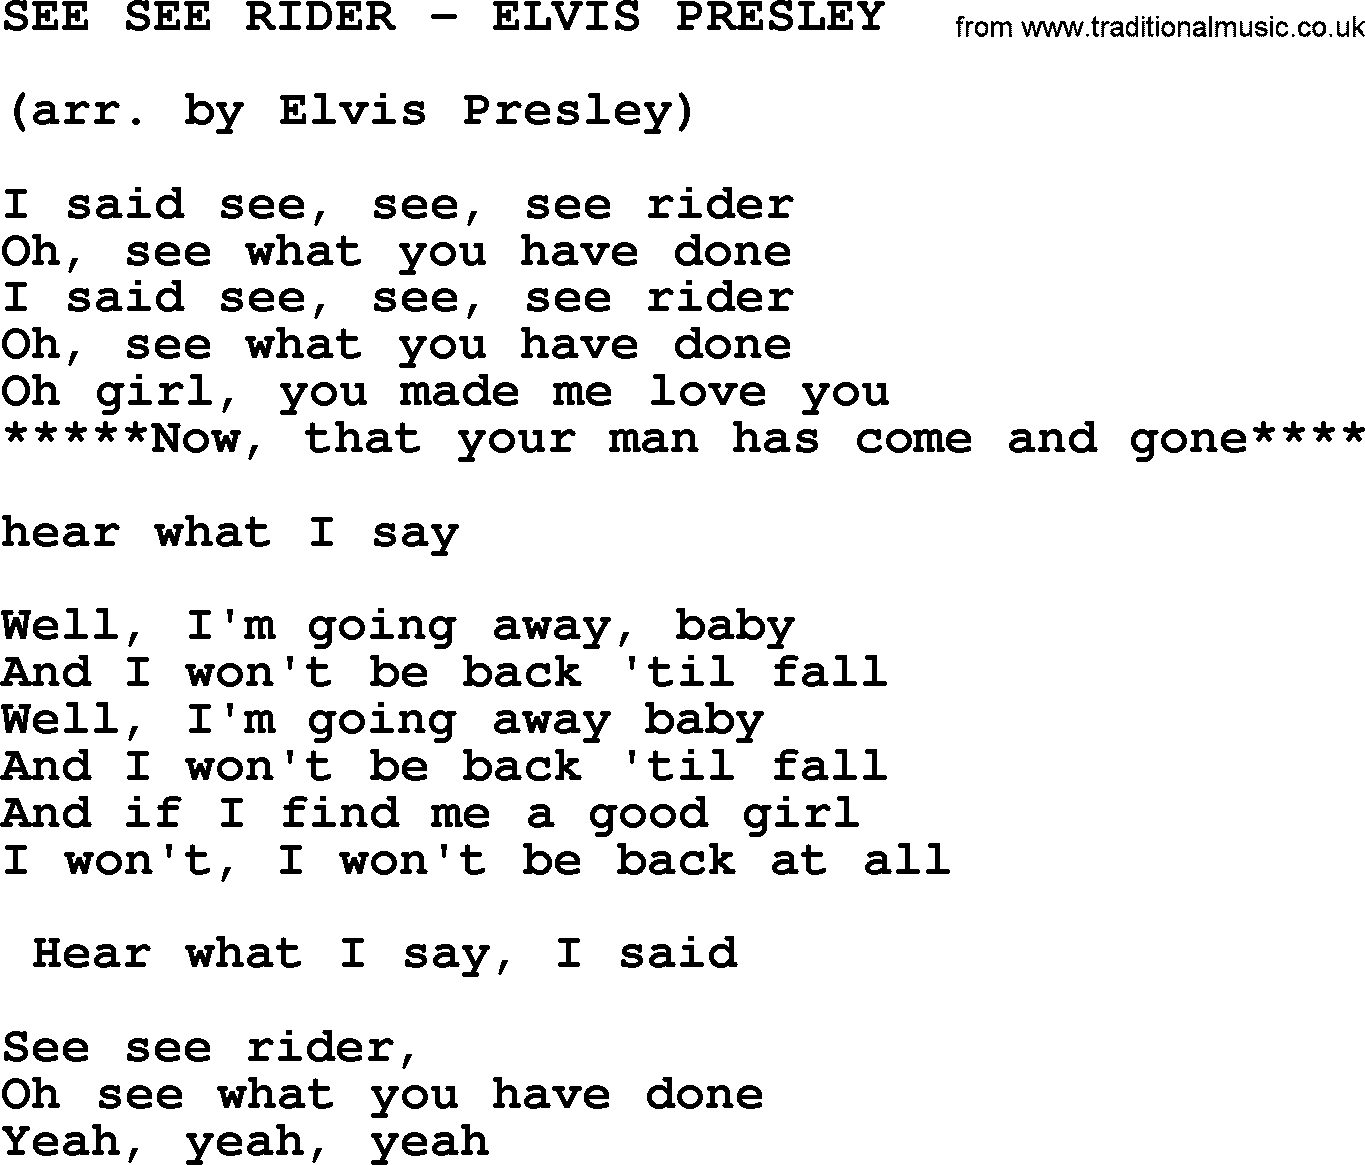 Elvis Presley song: See See Rider-Elvis Presley-.txt lyrics and chords